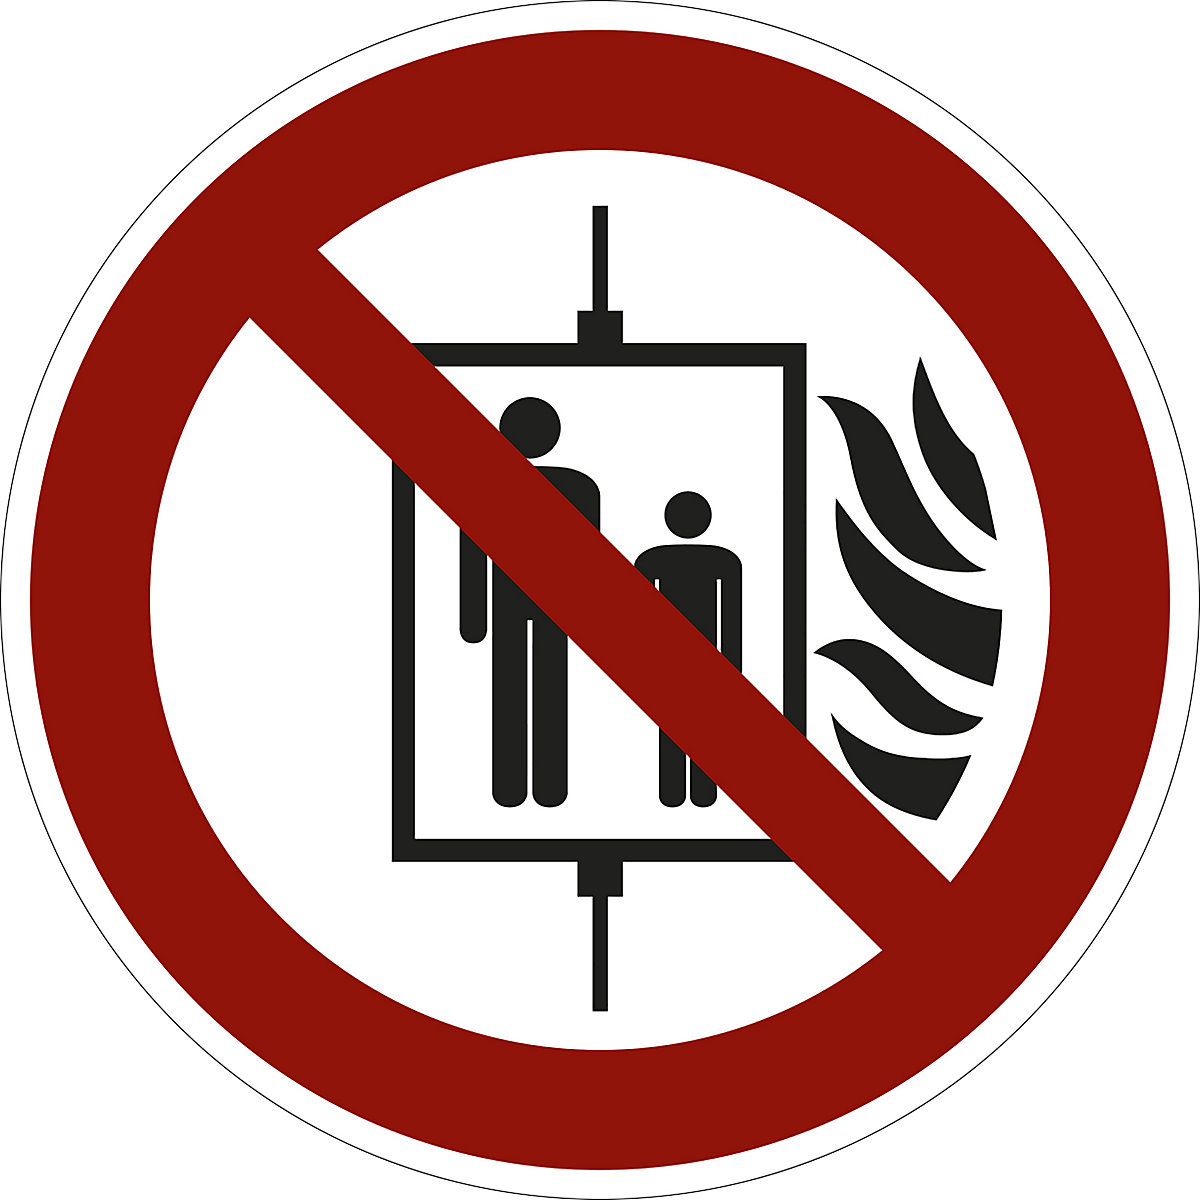 Zákazová značka, V případě požáru nepoužívejte výtah, bal.j. 10 ks, fólie, Ø 100 mm